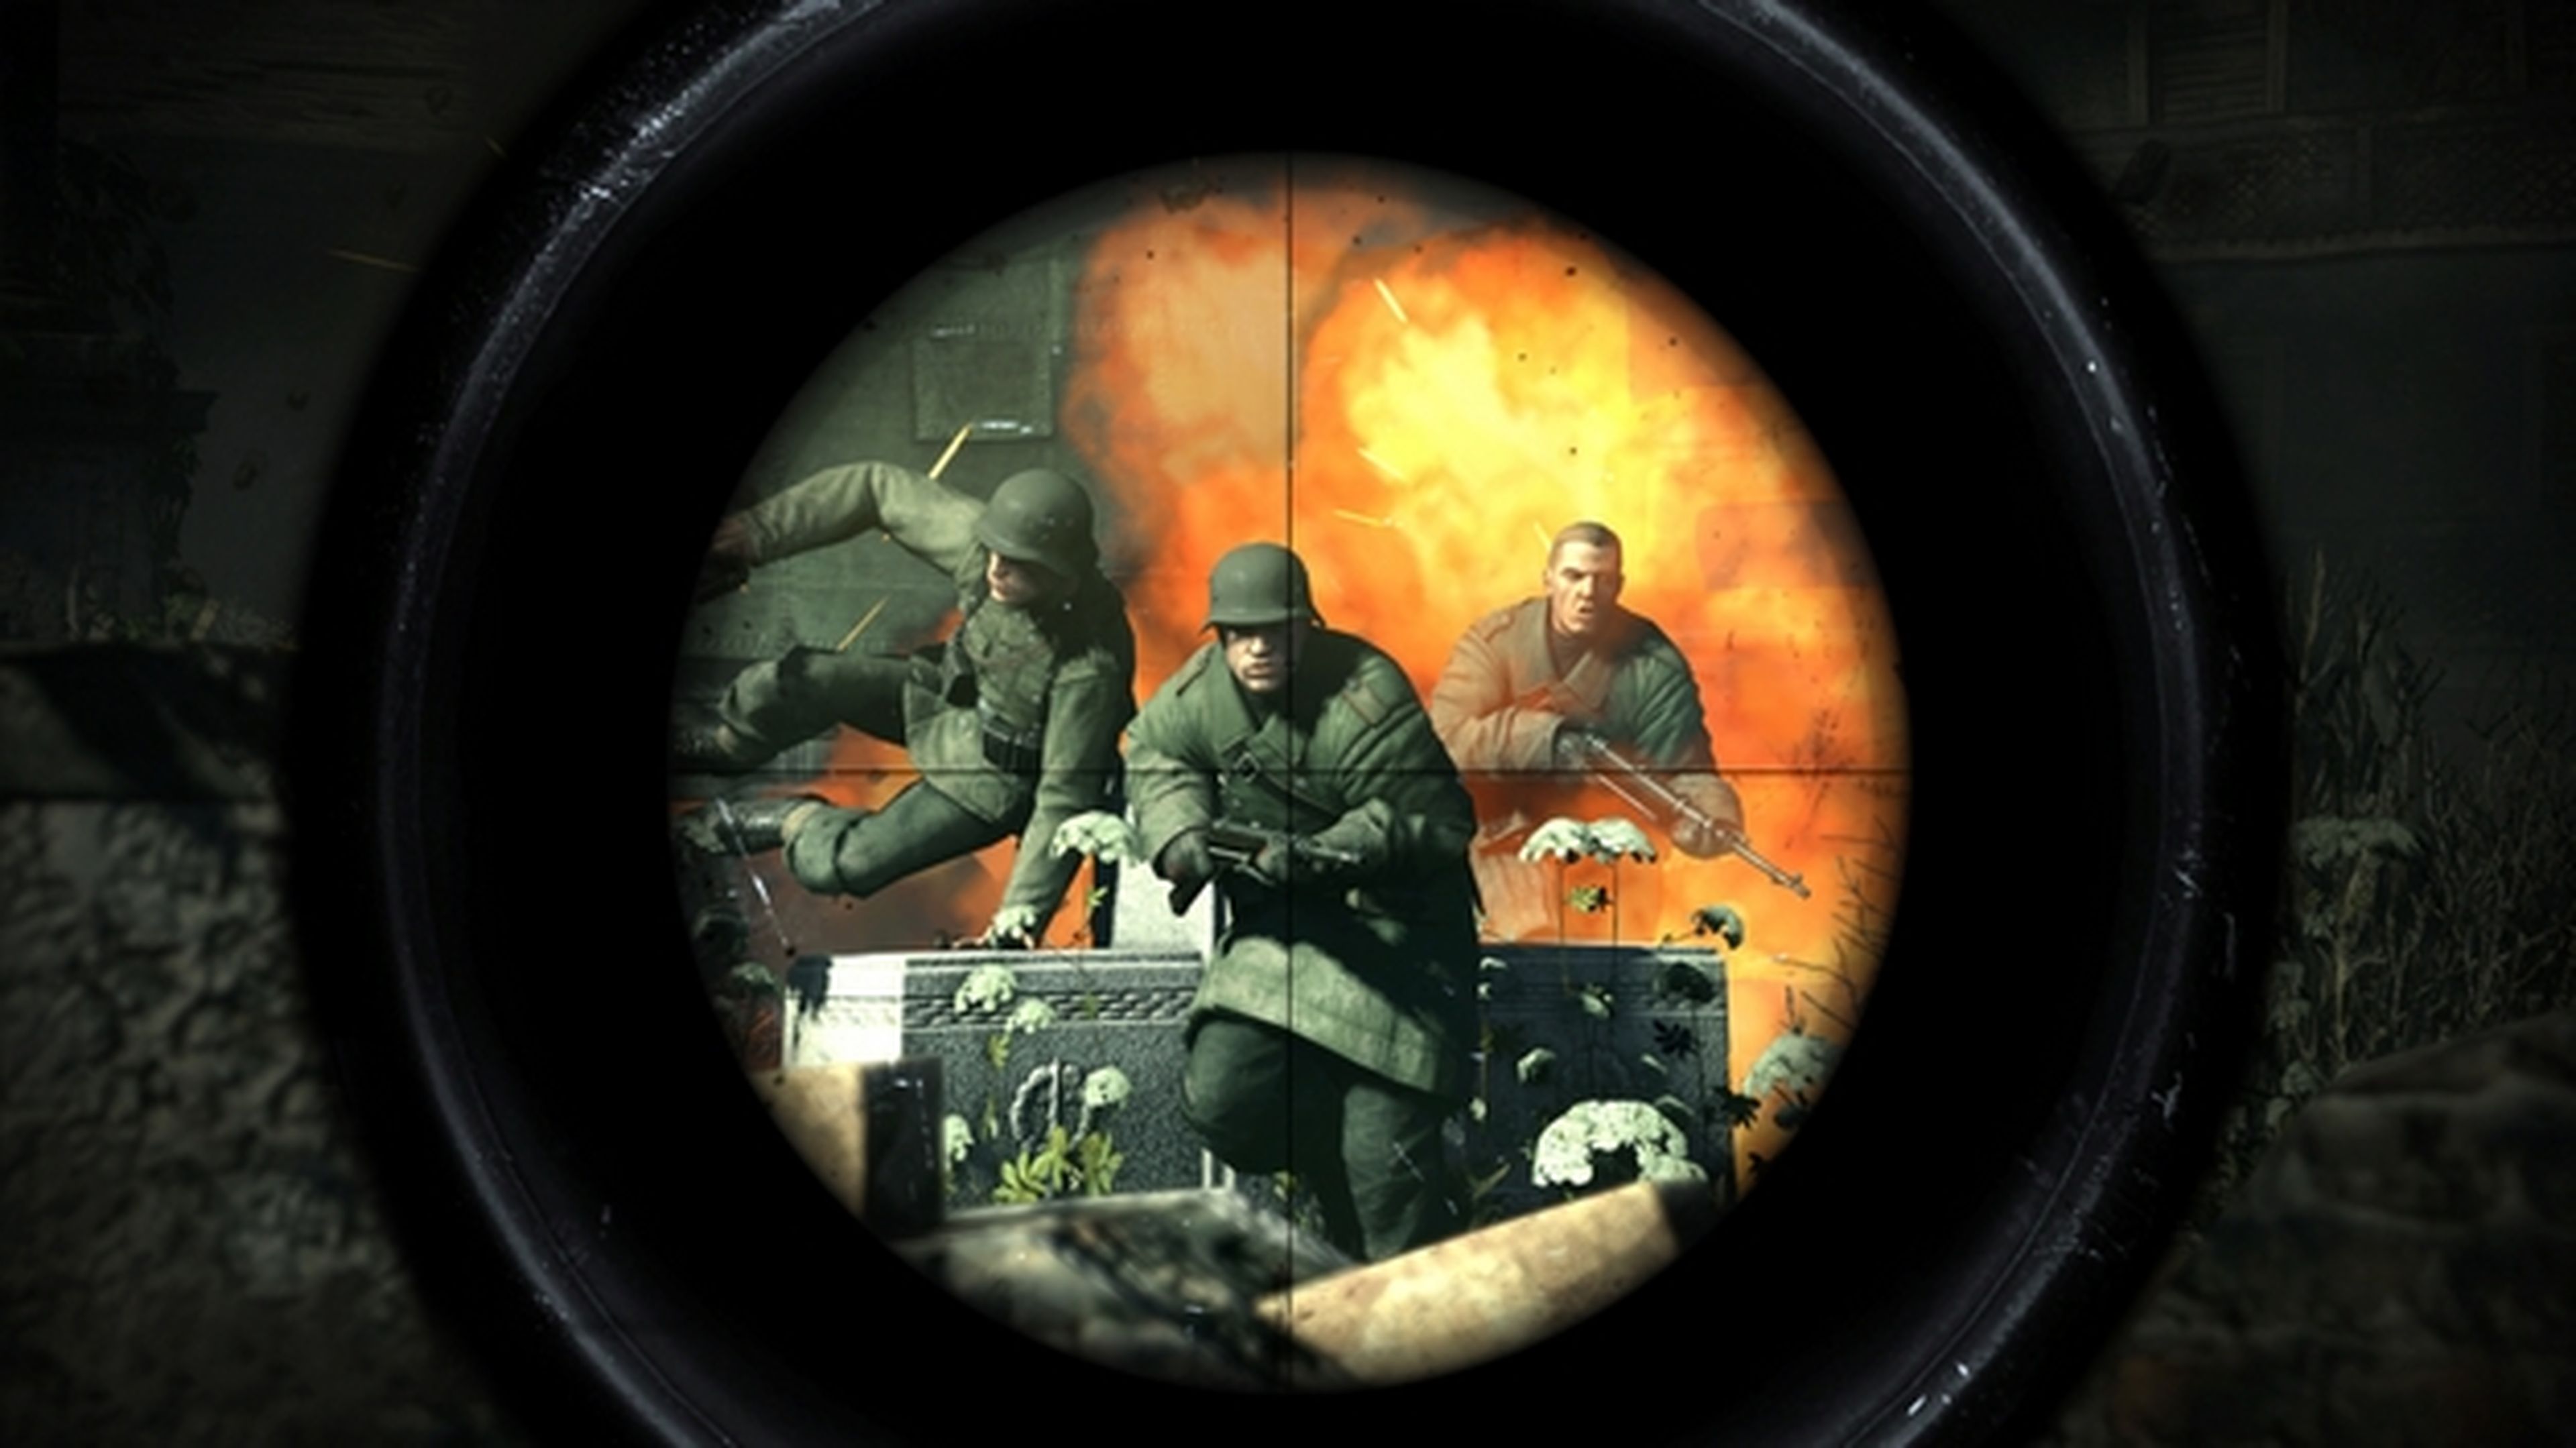 Sniper Elite V2 gratis para PC en Steam sólo hoy. ¡Deprisa! | Computer Hoy